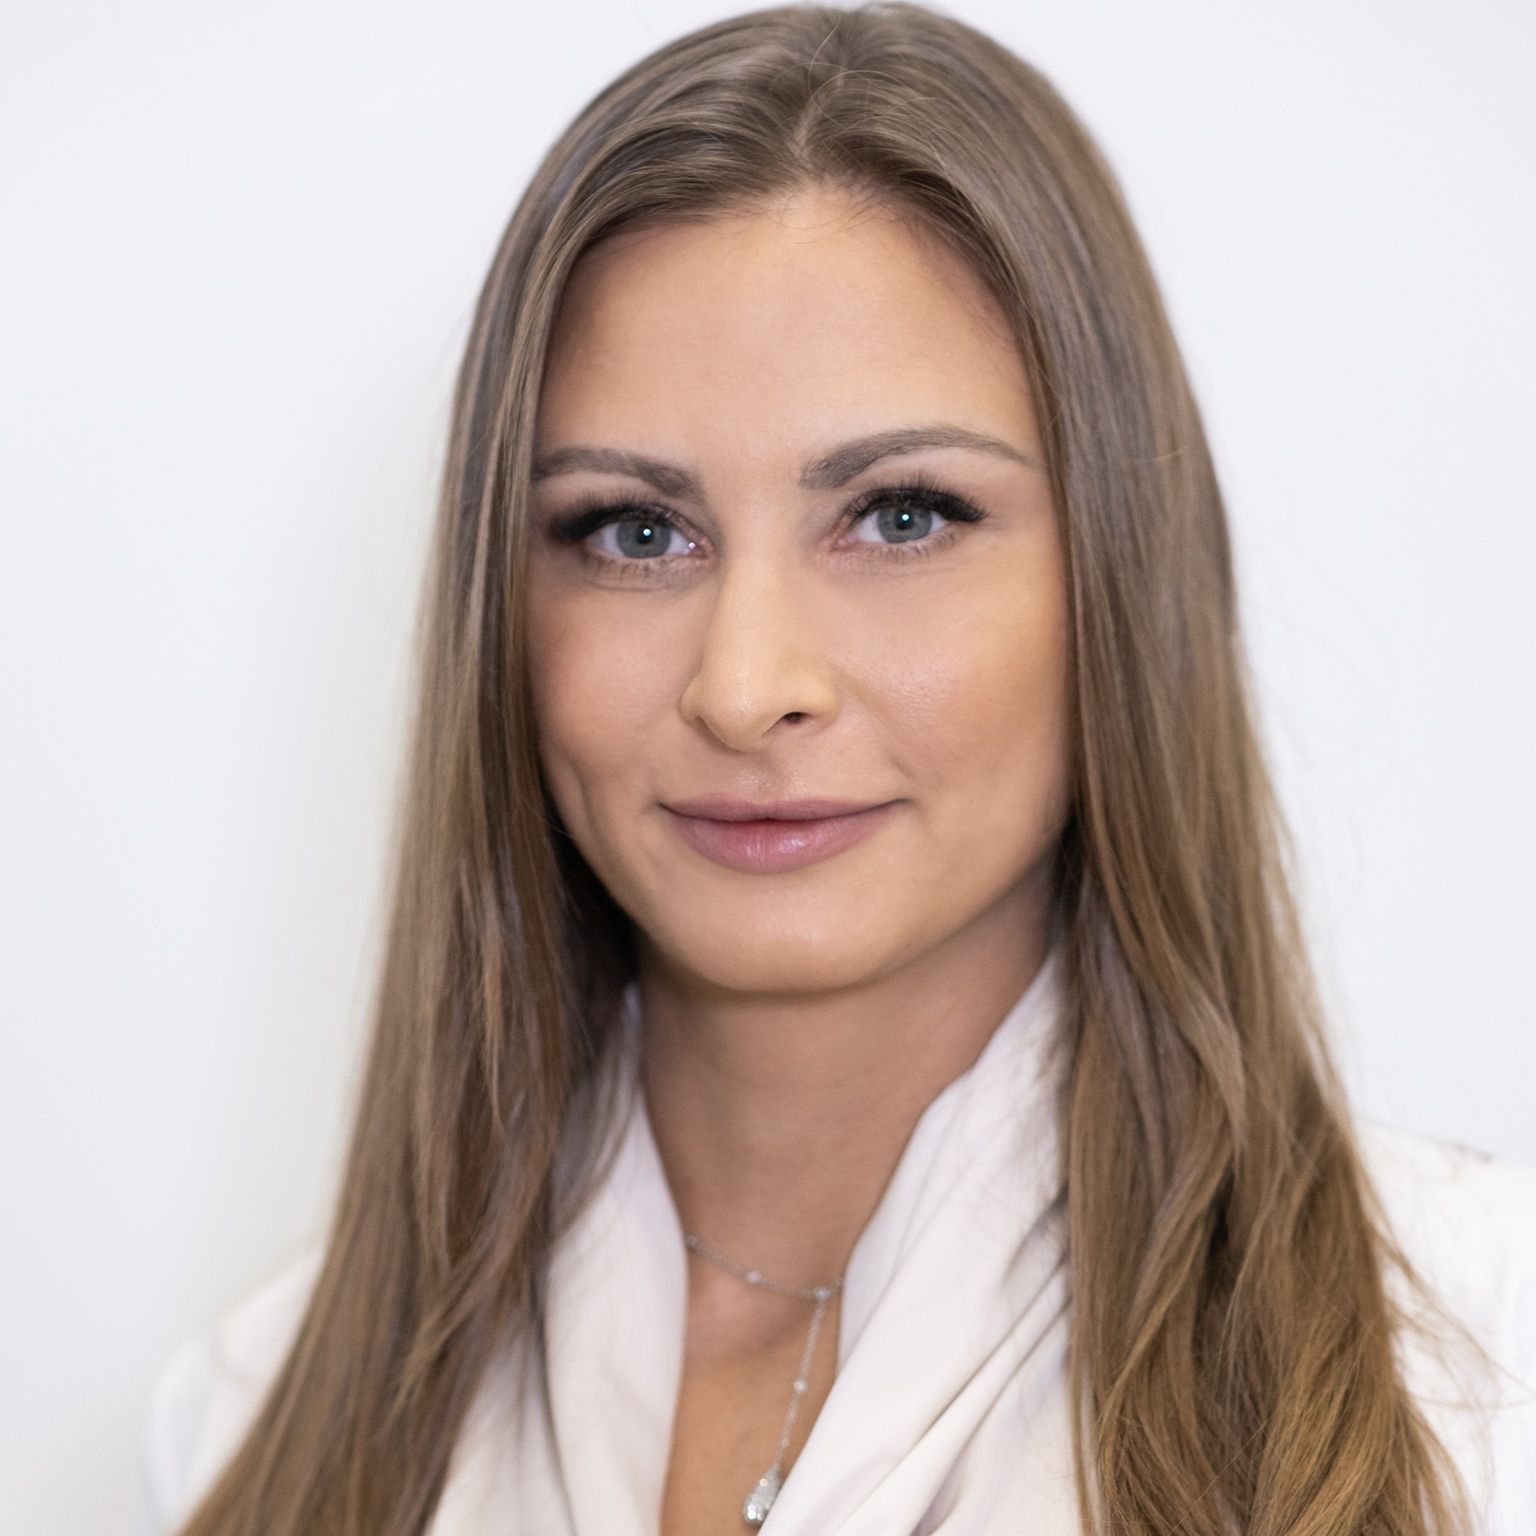 Dr Oliwia Miszczuk - M-ESTETICA